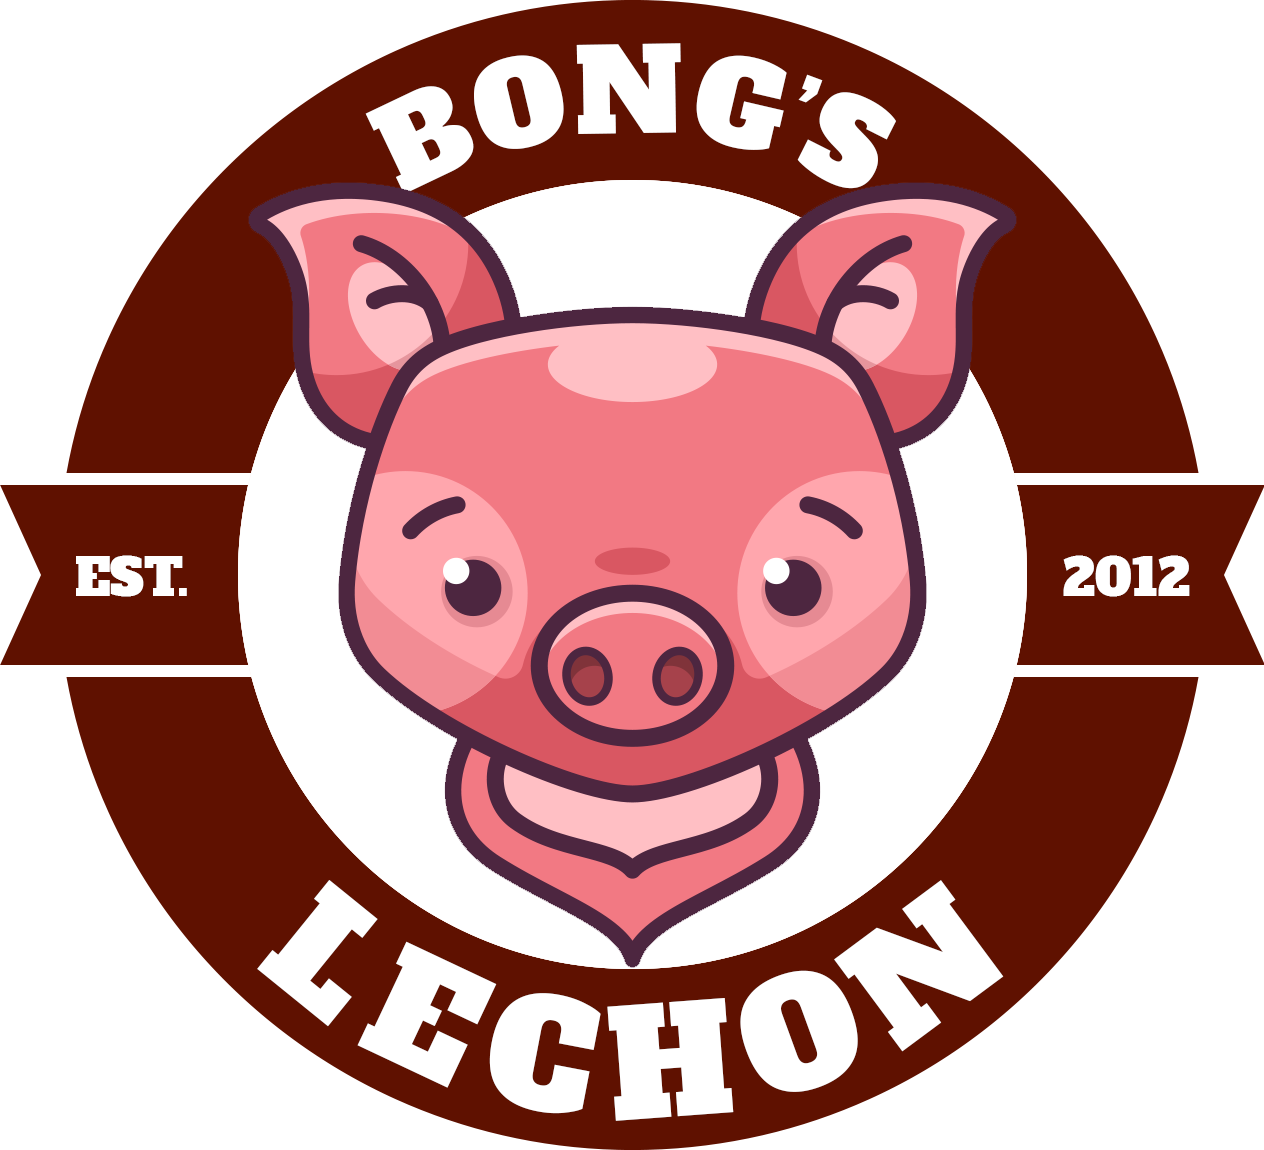 Bong's Lechon Leeds